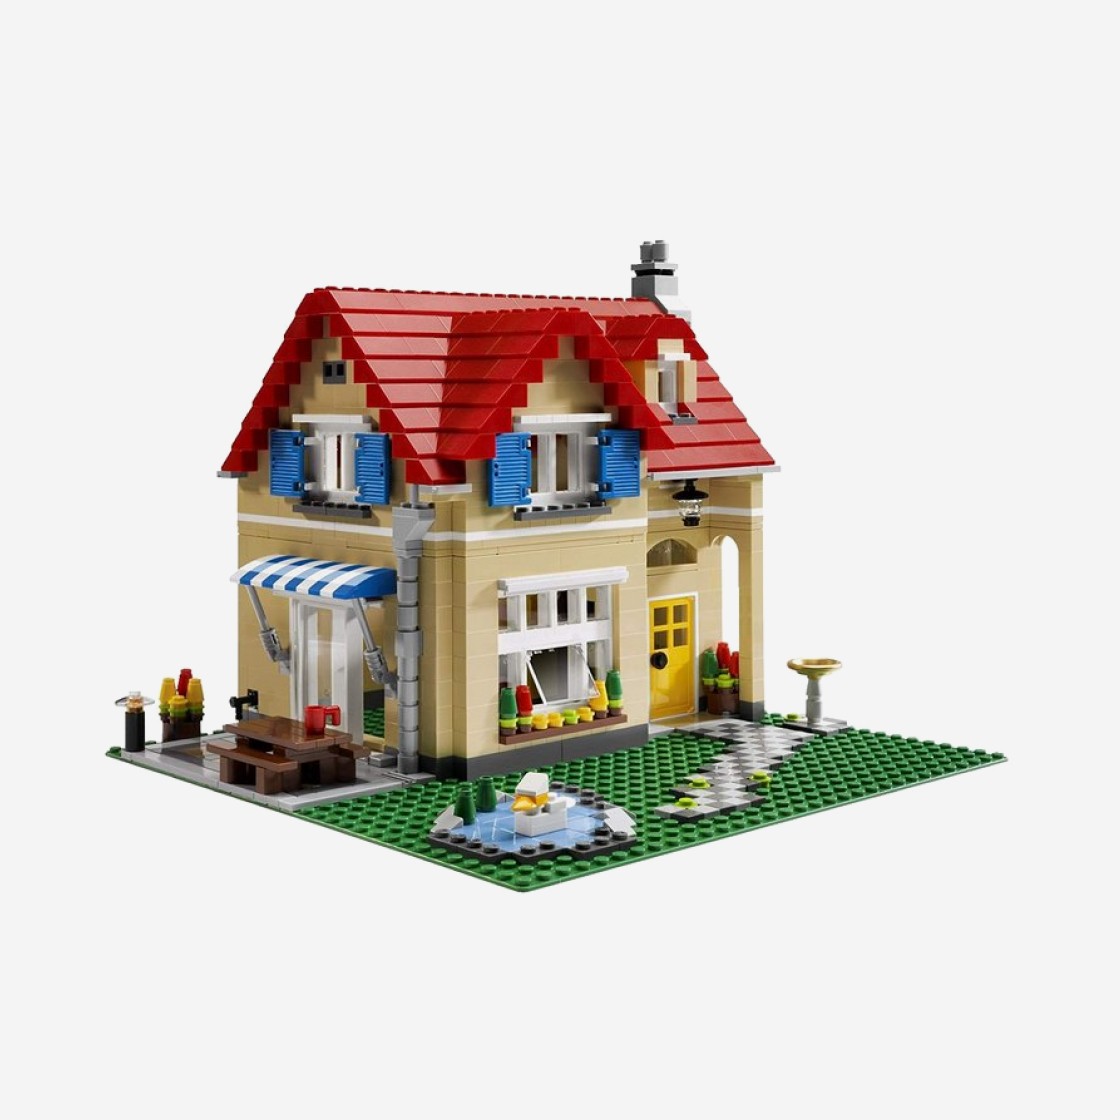 Lego] 레고 패밀리 홈 발매 정보 - 6754 - 럭드 (Luck-D)